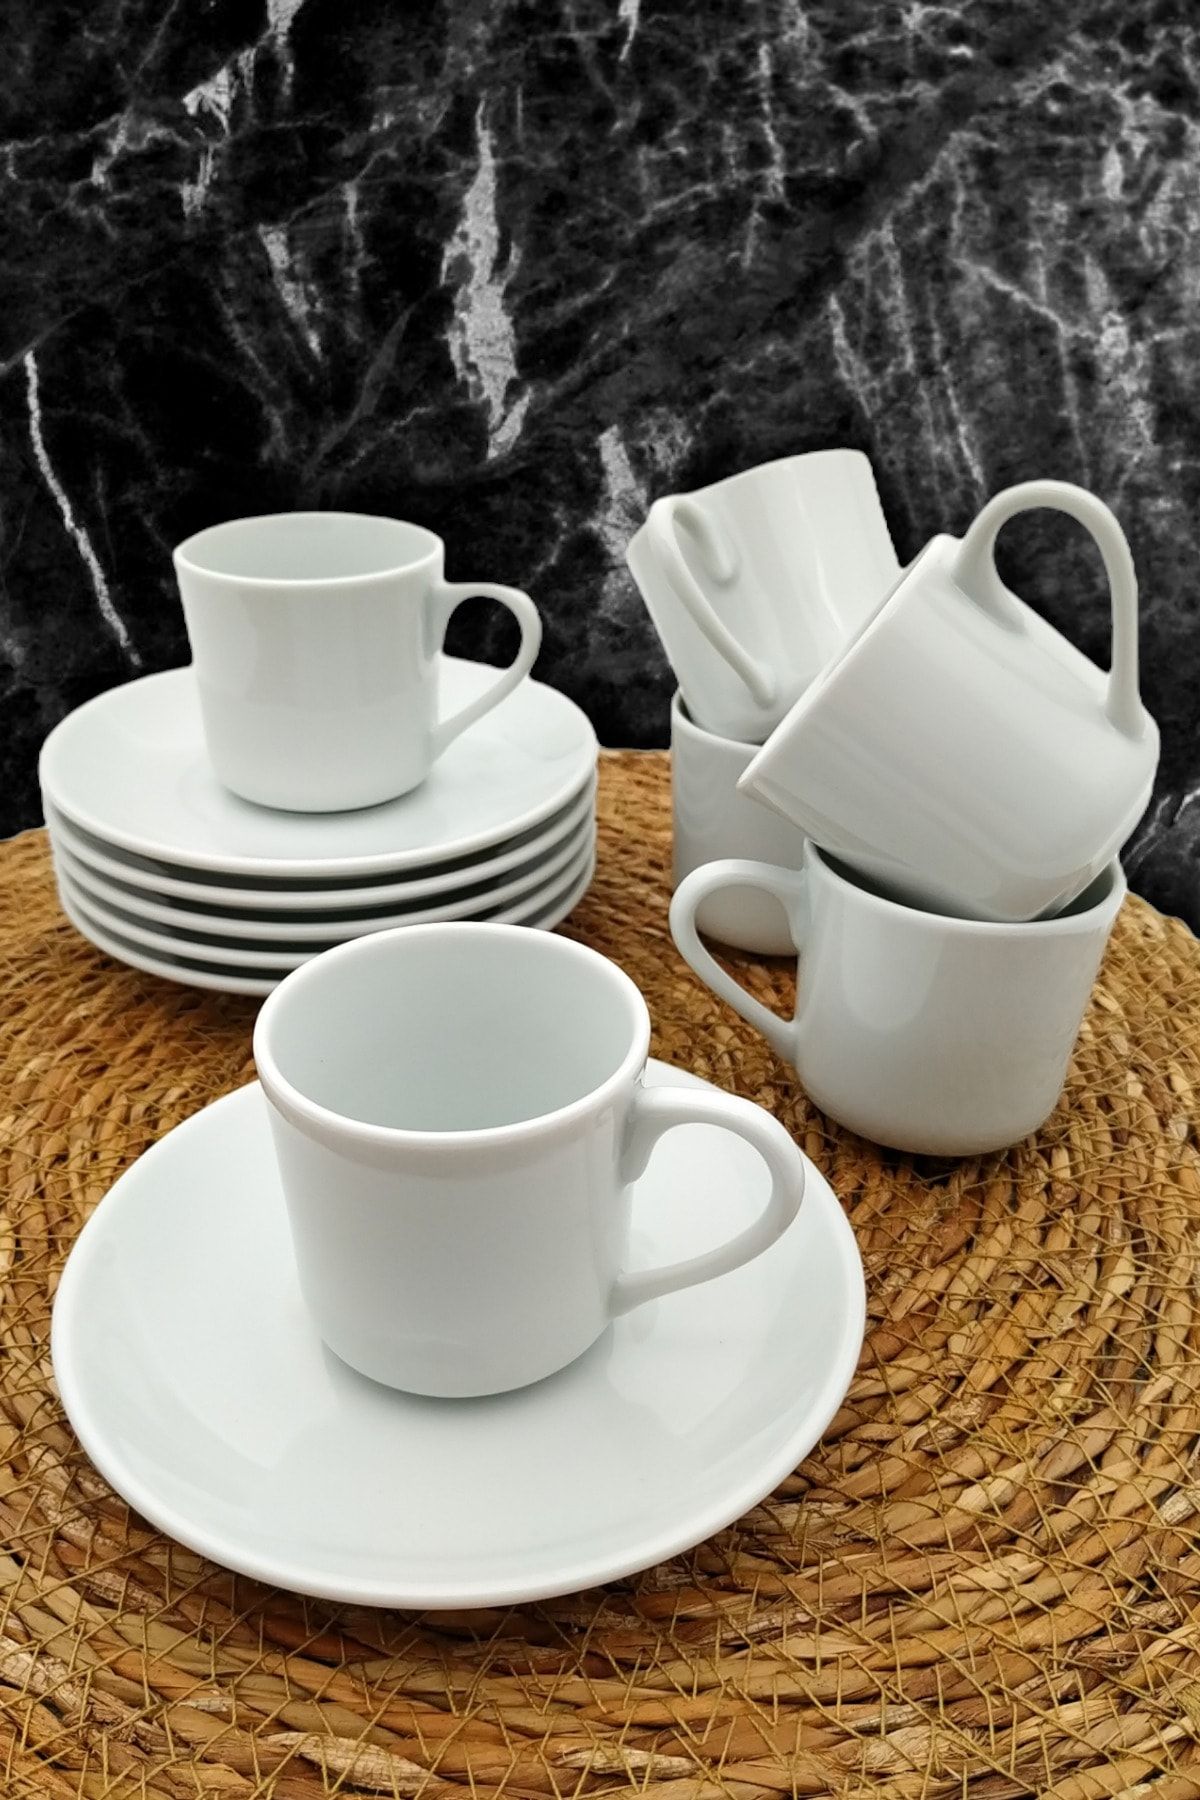 METROPOLAVM Porselen 6 Kişilik Kahve Fincan Takımı Beyaz Sade Şık